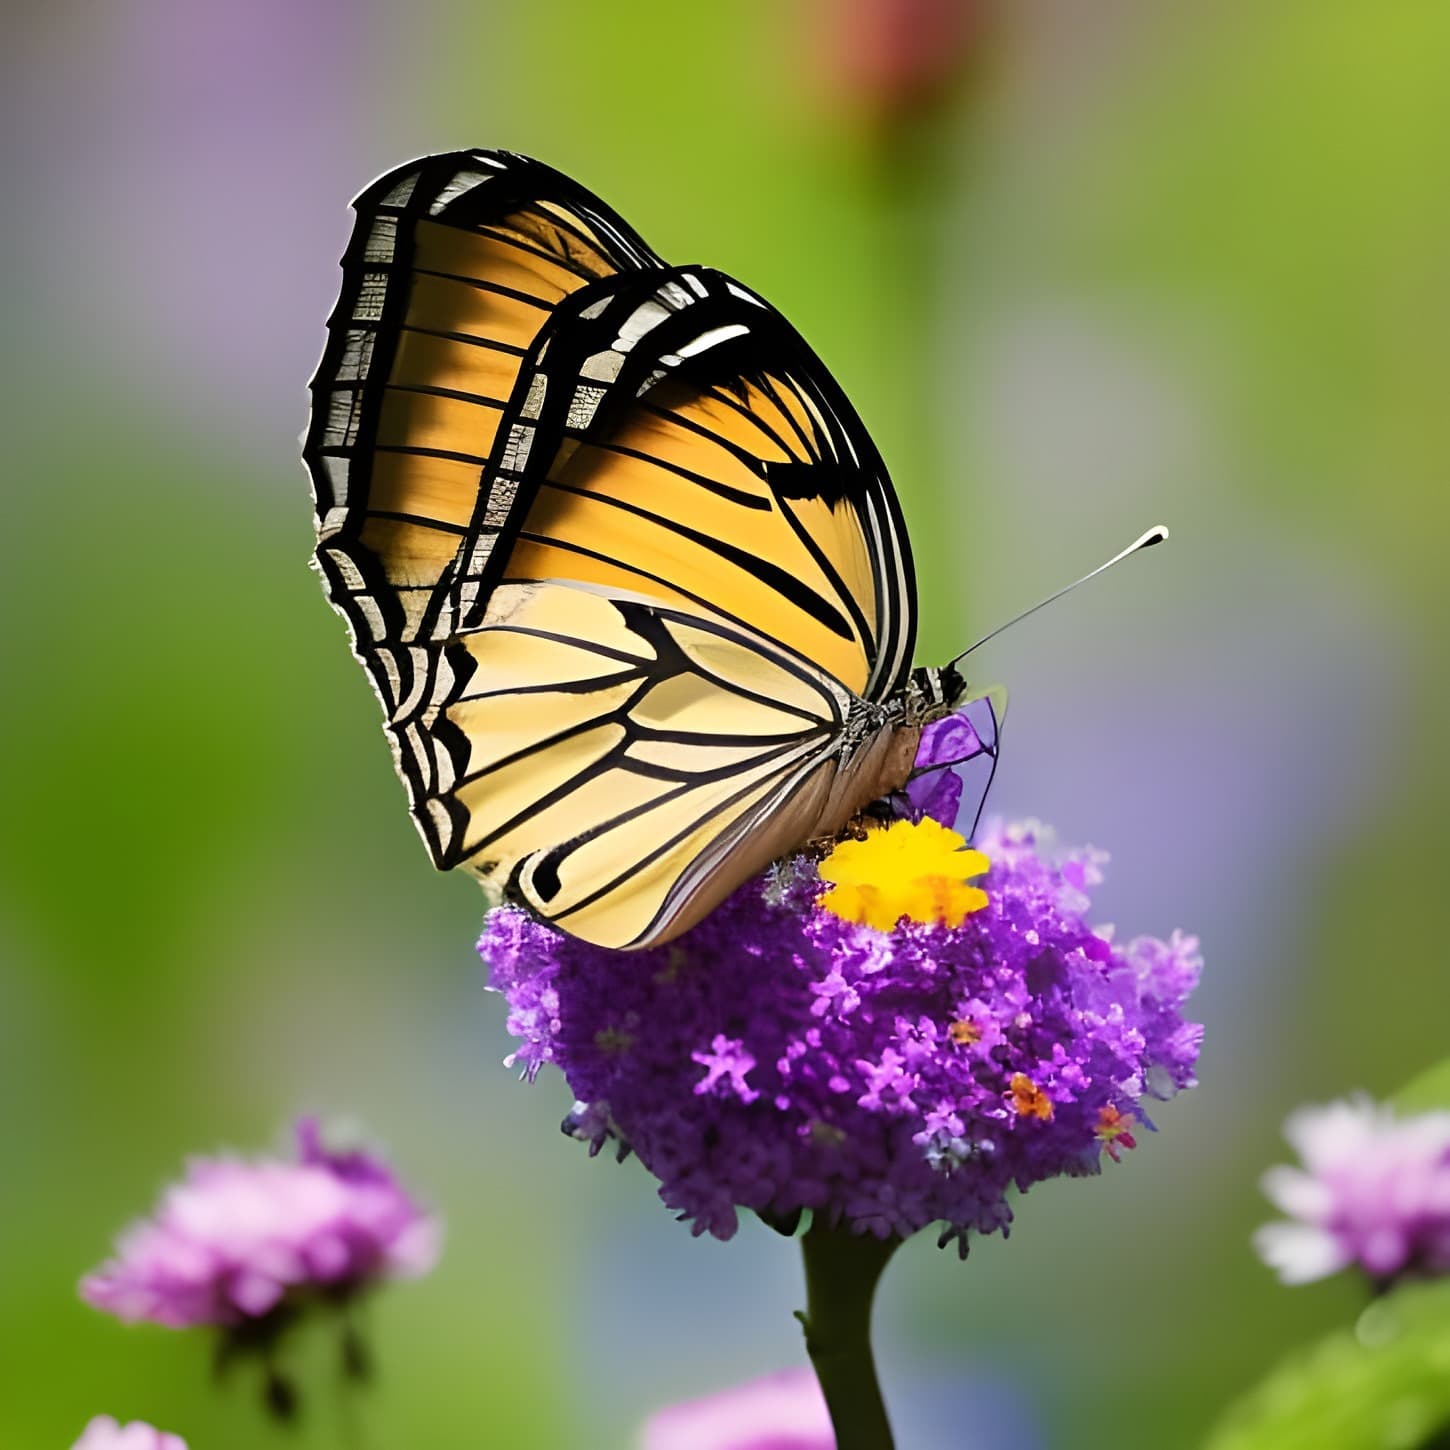 brun jaunâtre, Papilionidae, fleur de papillon, rosâtre, fleur, insecte, nectar, fleur